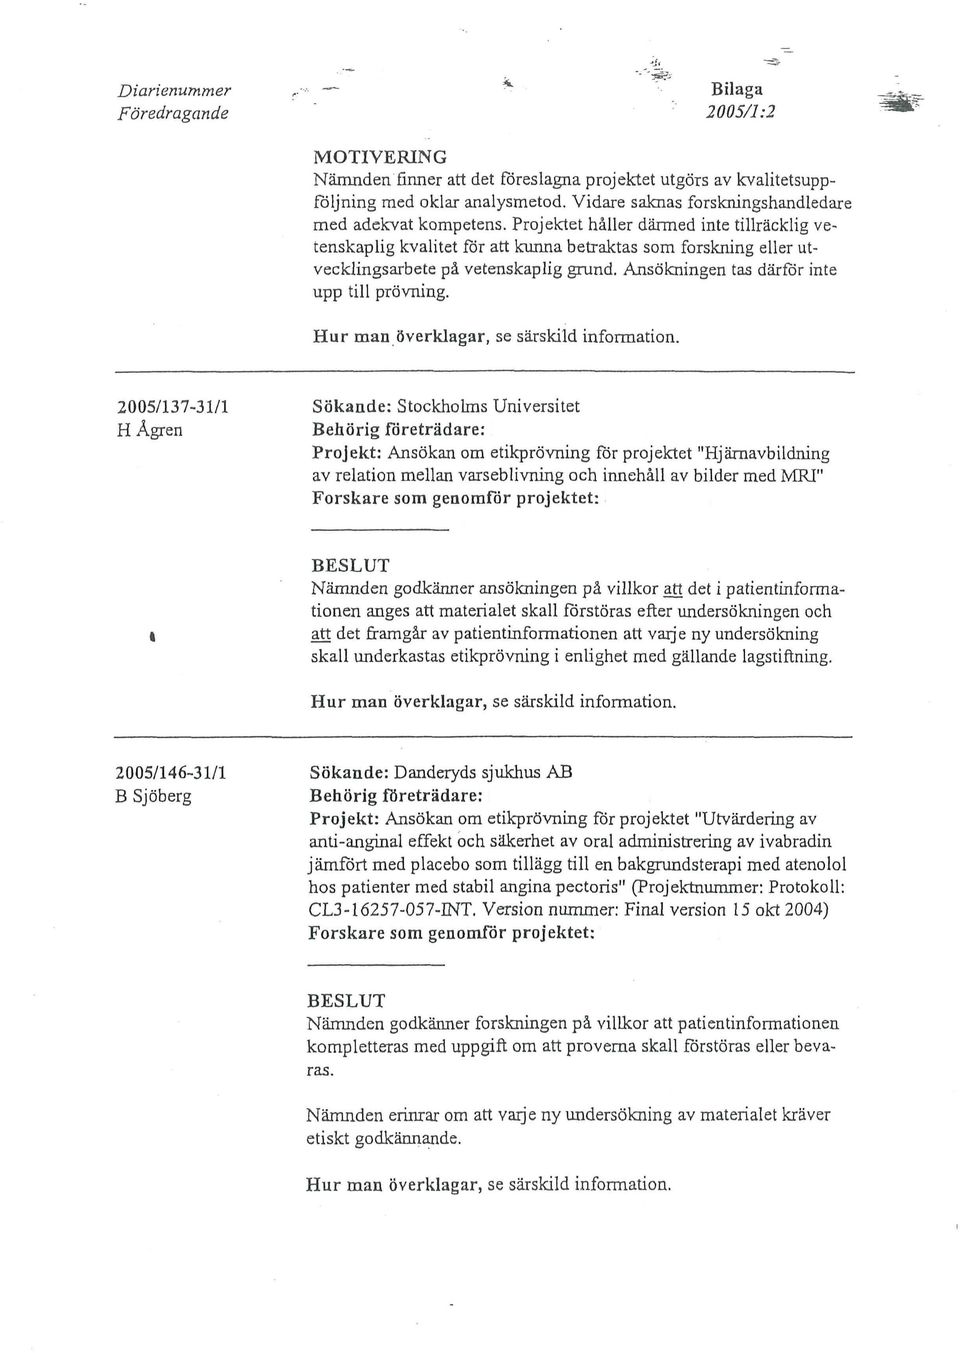 2005/137-31/1 Sökande: Stockholms Universitet Projekt: Ansökan om etikprövning för projektet "Hjärnavbildning av relation mellan varseblivning och innehåll av bilder med MRJ" Nämnden godkänner